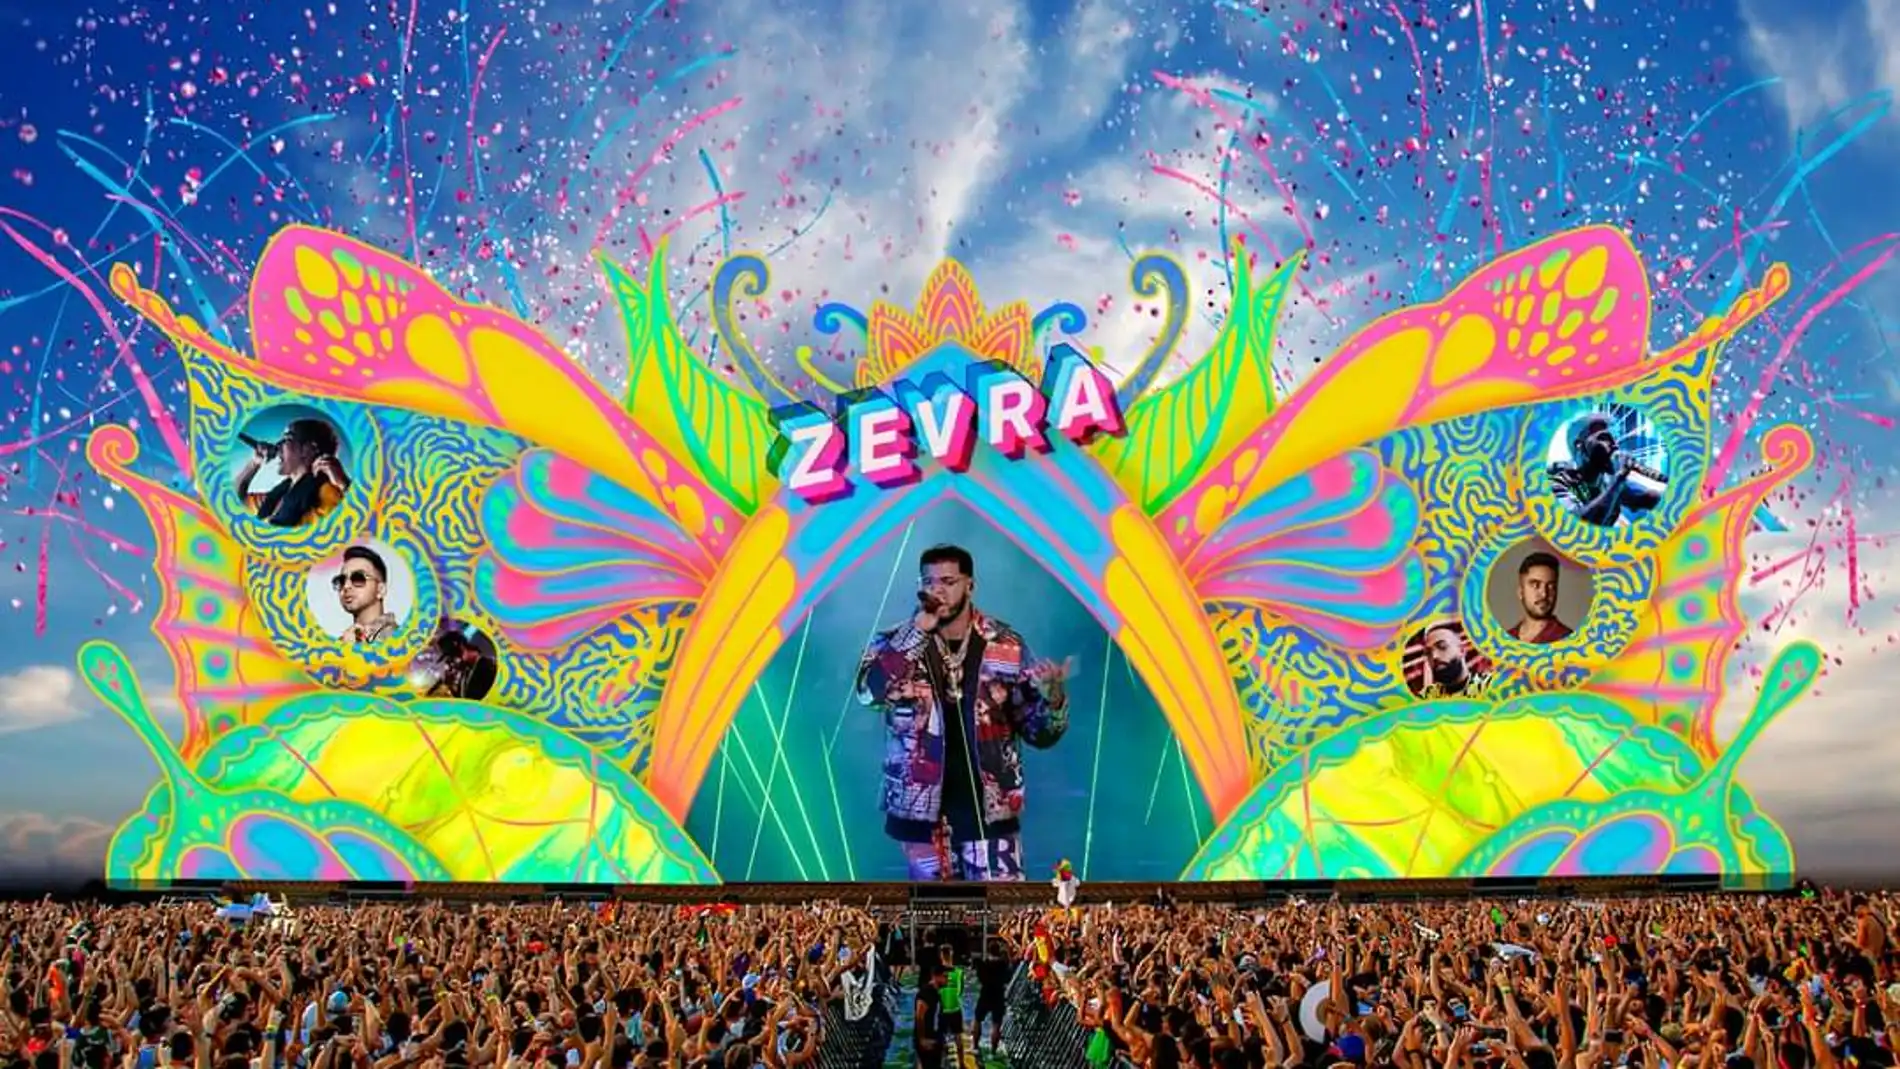 Zevra Festival llega a Cullera del 22 al 25 de julio